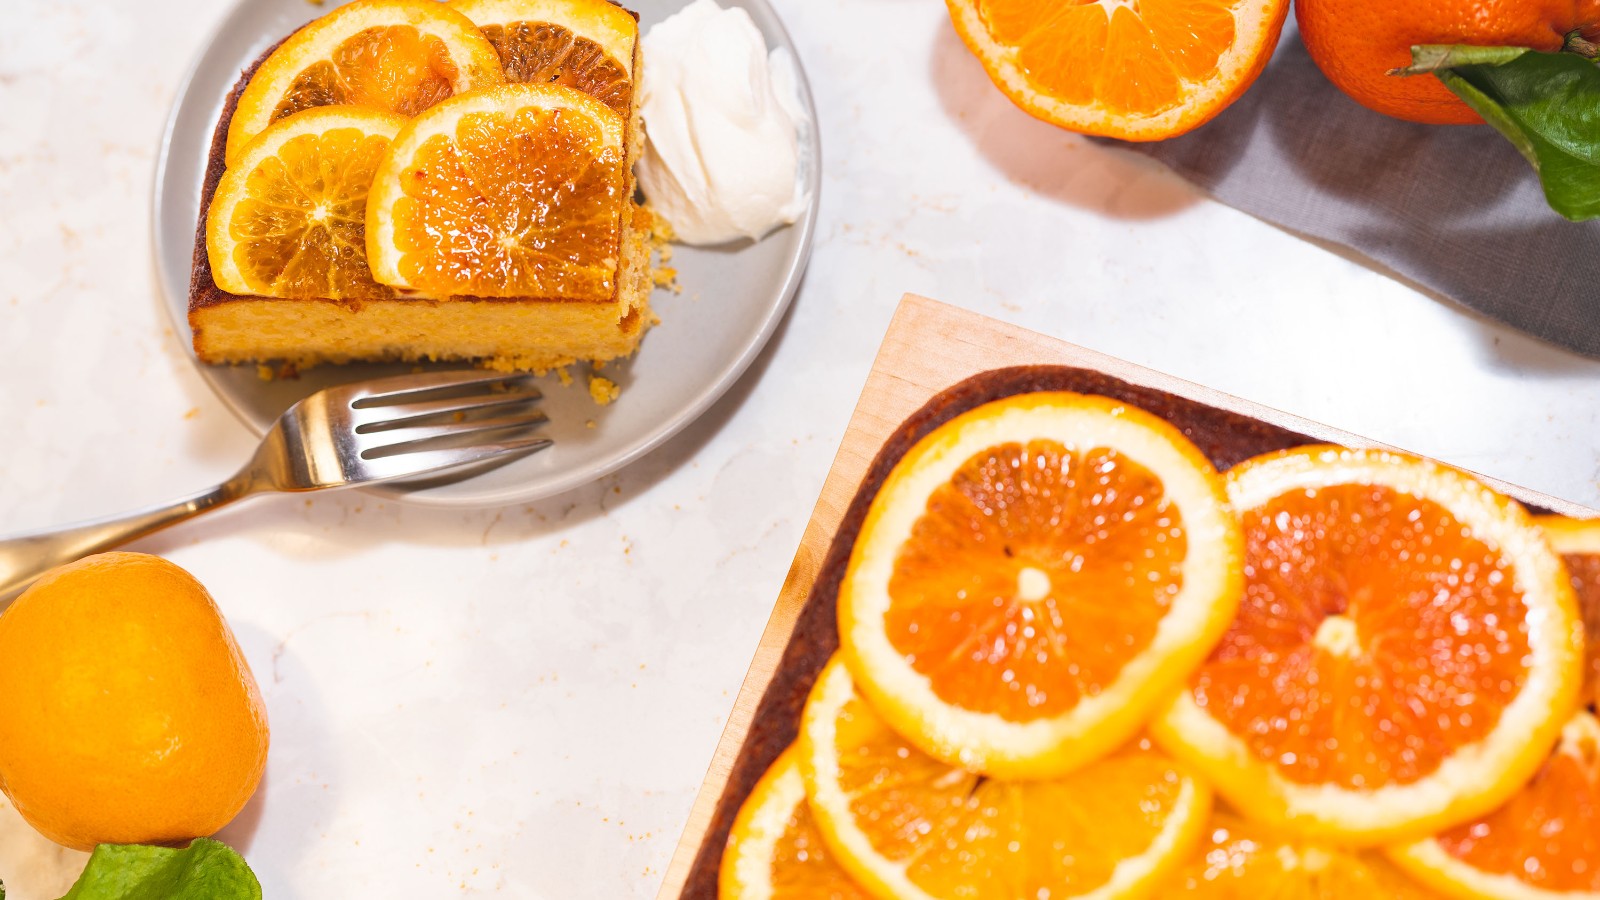 Image of Caramelized Citrus Cake